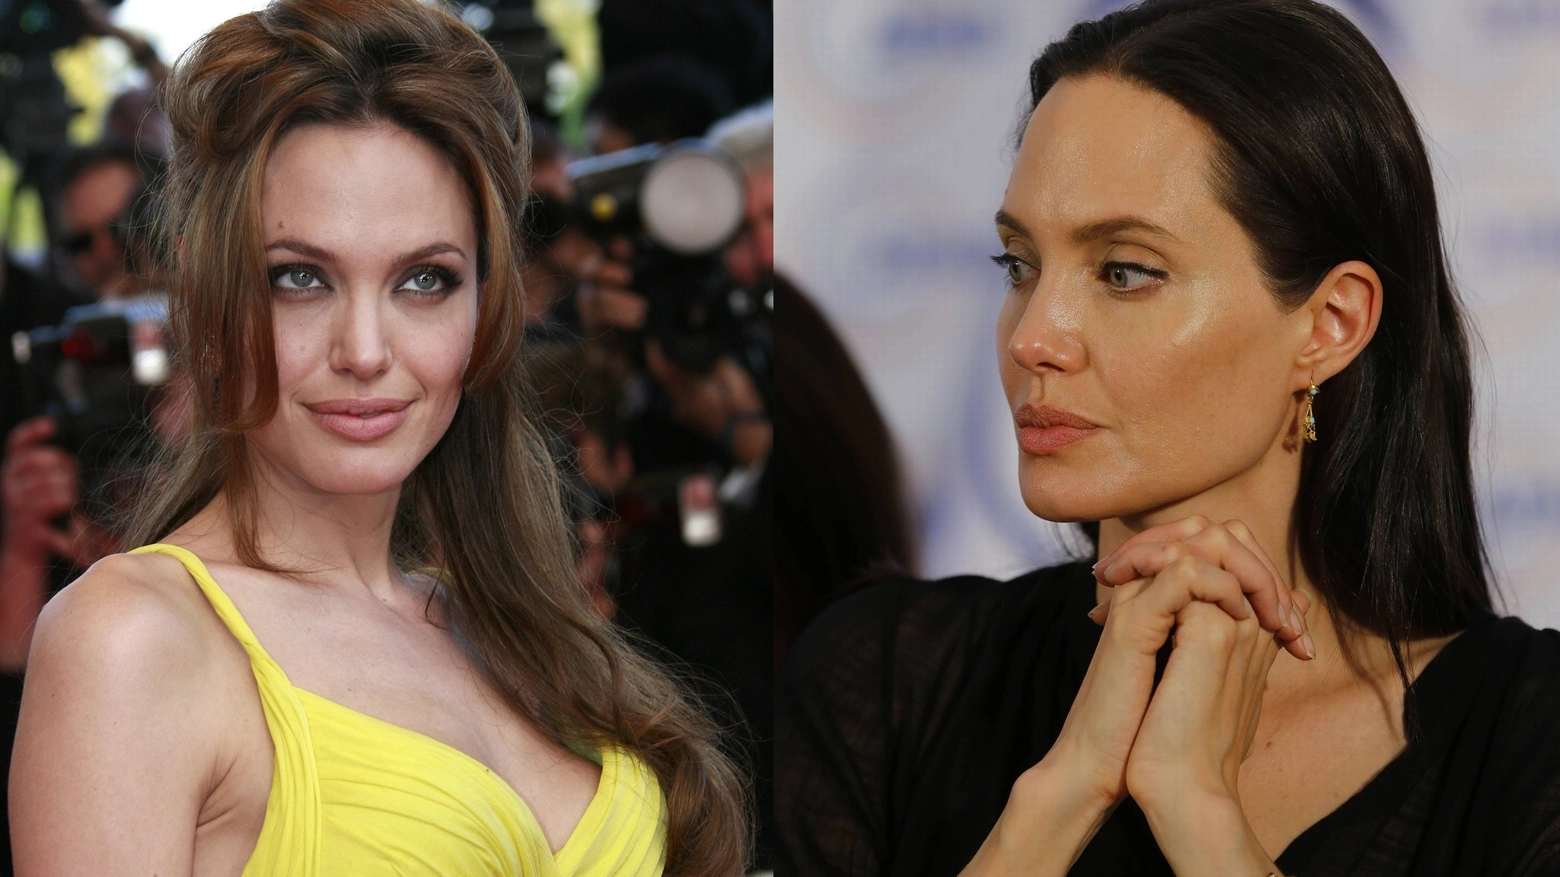 Angelina Jolie, prima e dopo